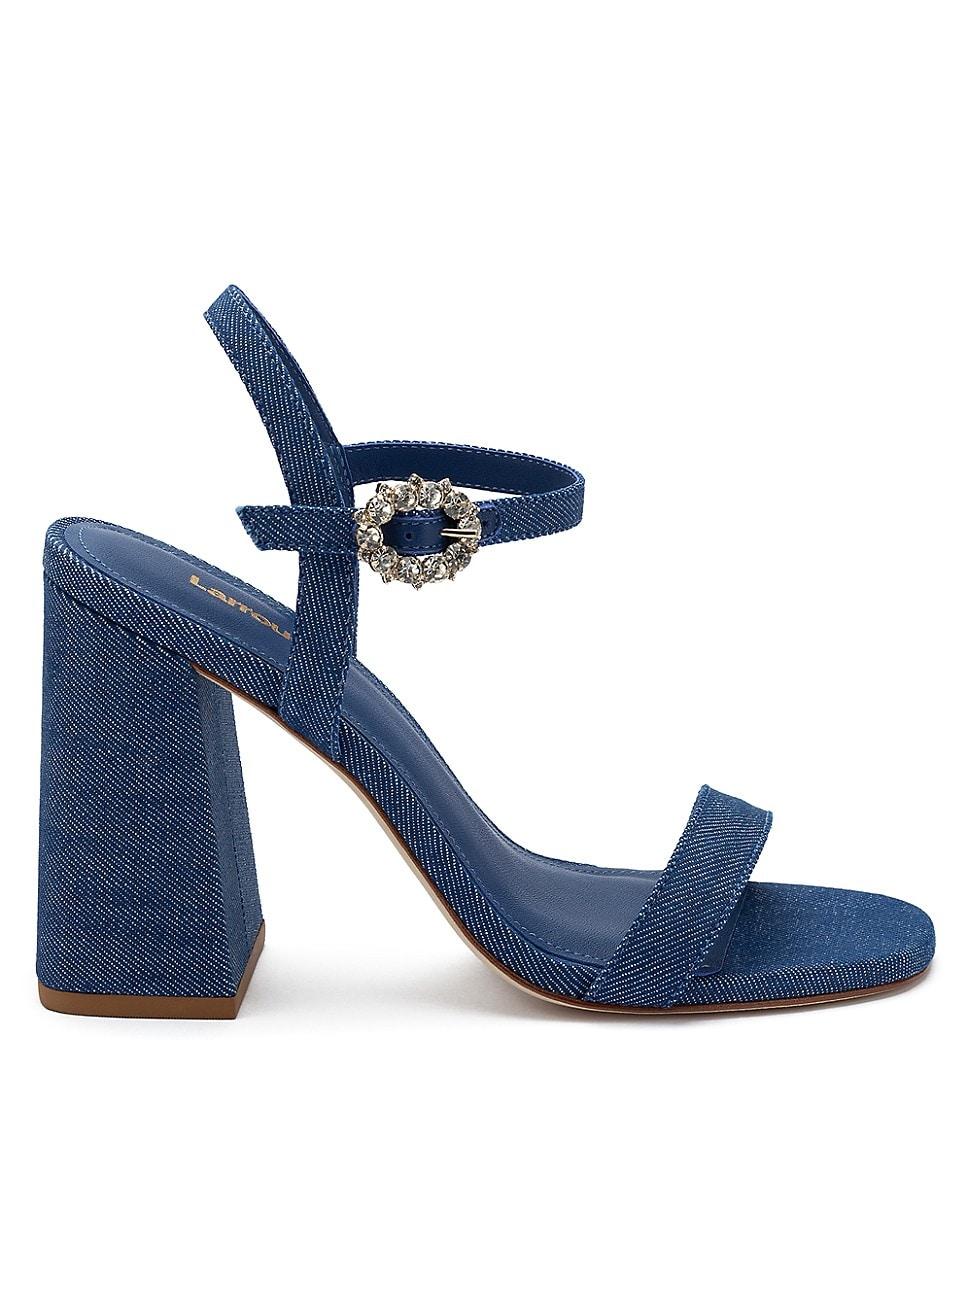 Larroude Selena 105mm Denim Block-heel Sandals in Blue | Lyst